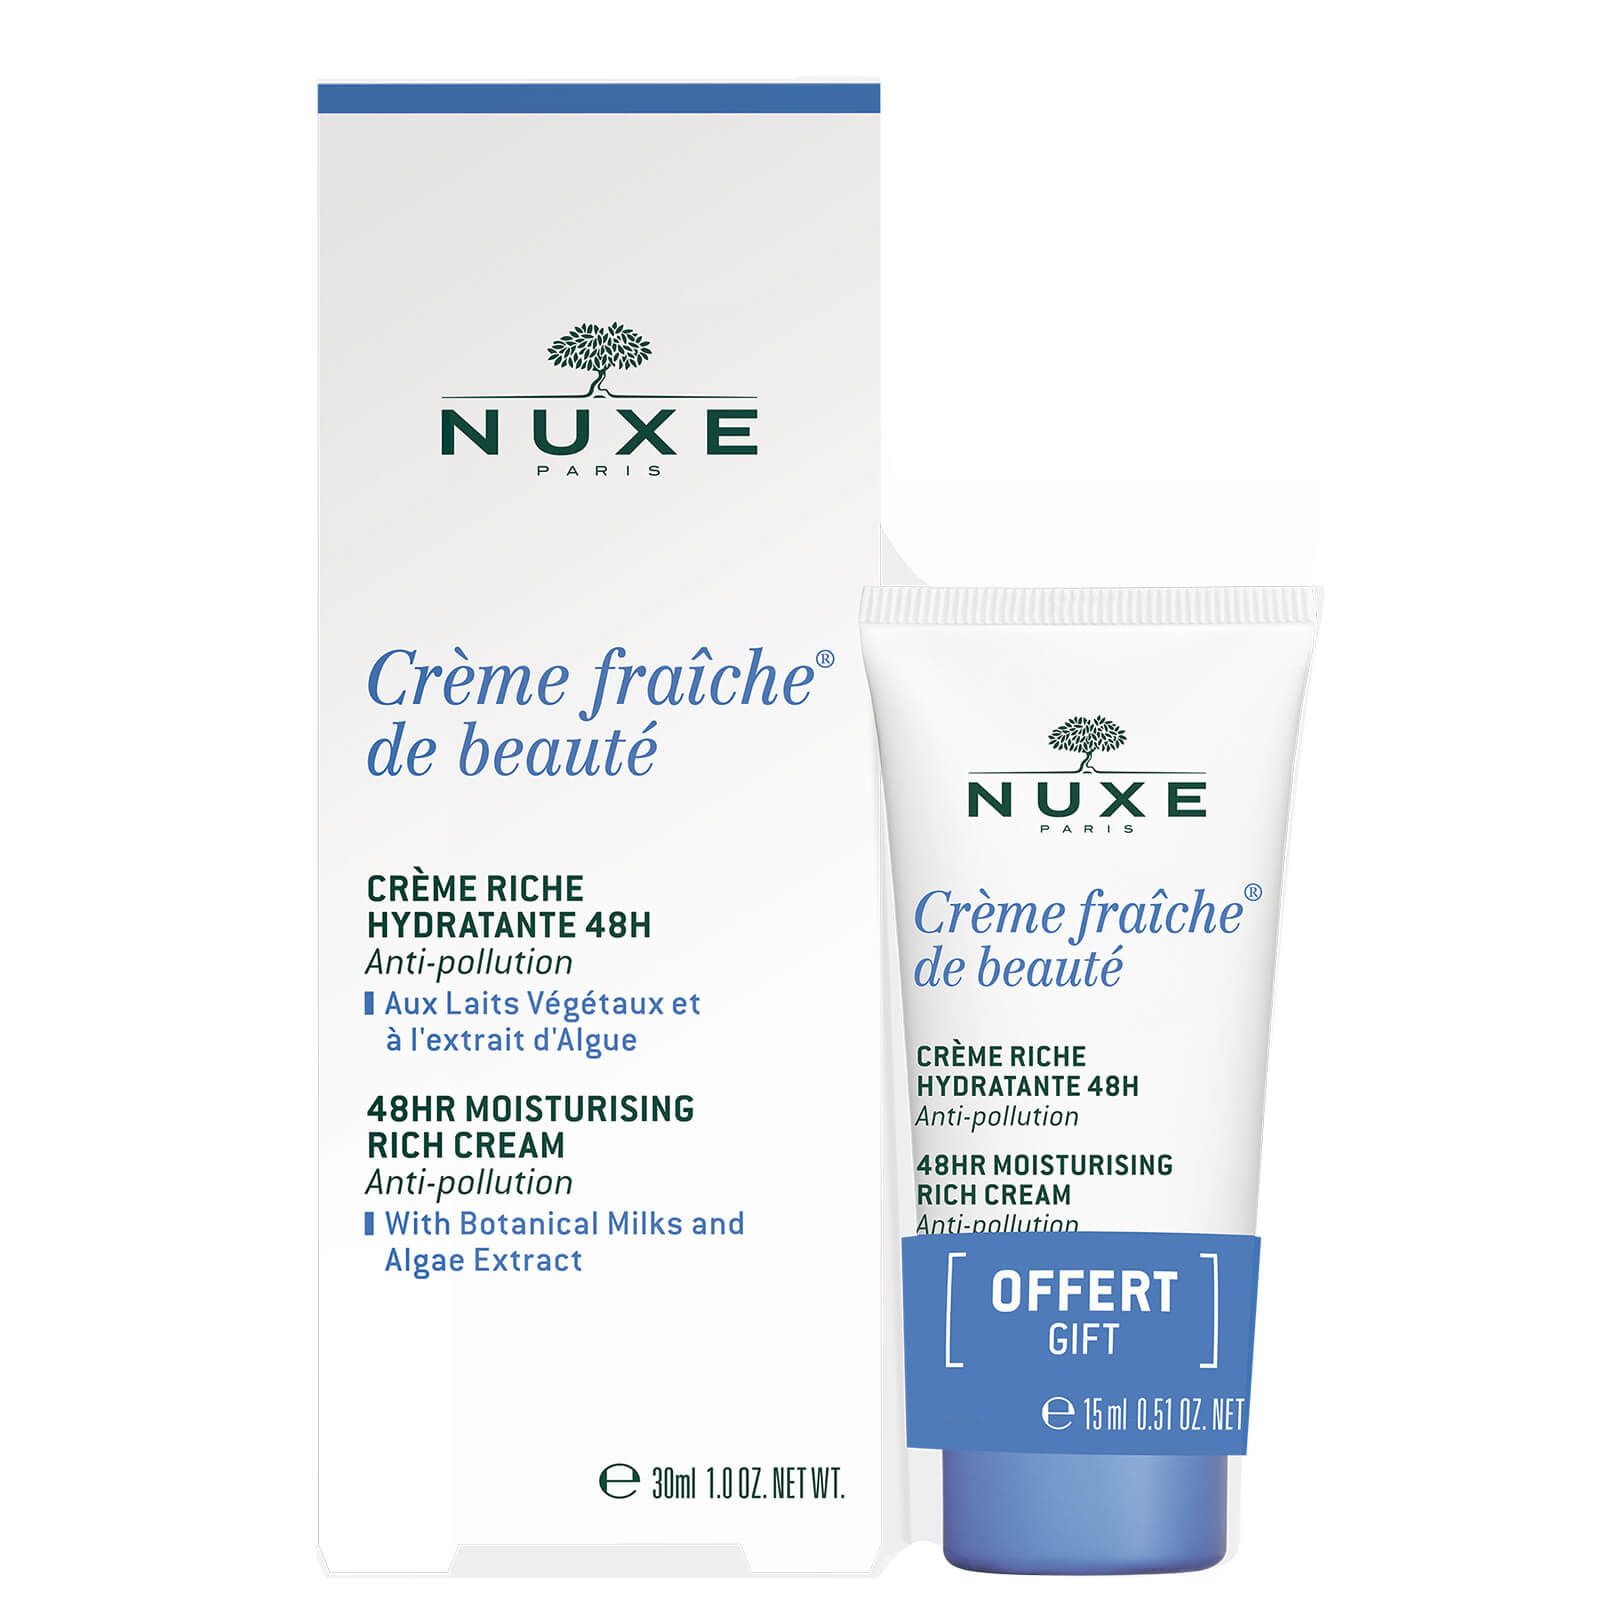 NUXE Crème Fraiche de Beauté 48hr Moisturising Cream for Dry Skin 30ml with 15ml Gift (Worth £25.50)